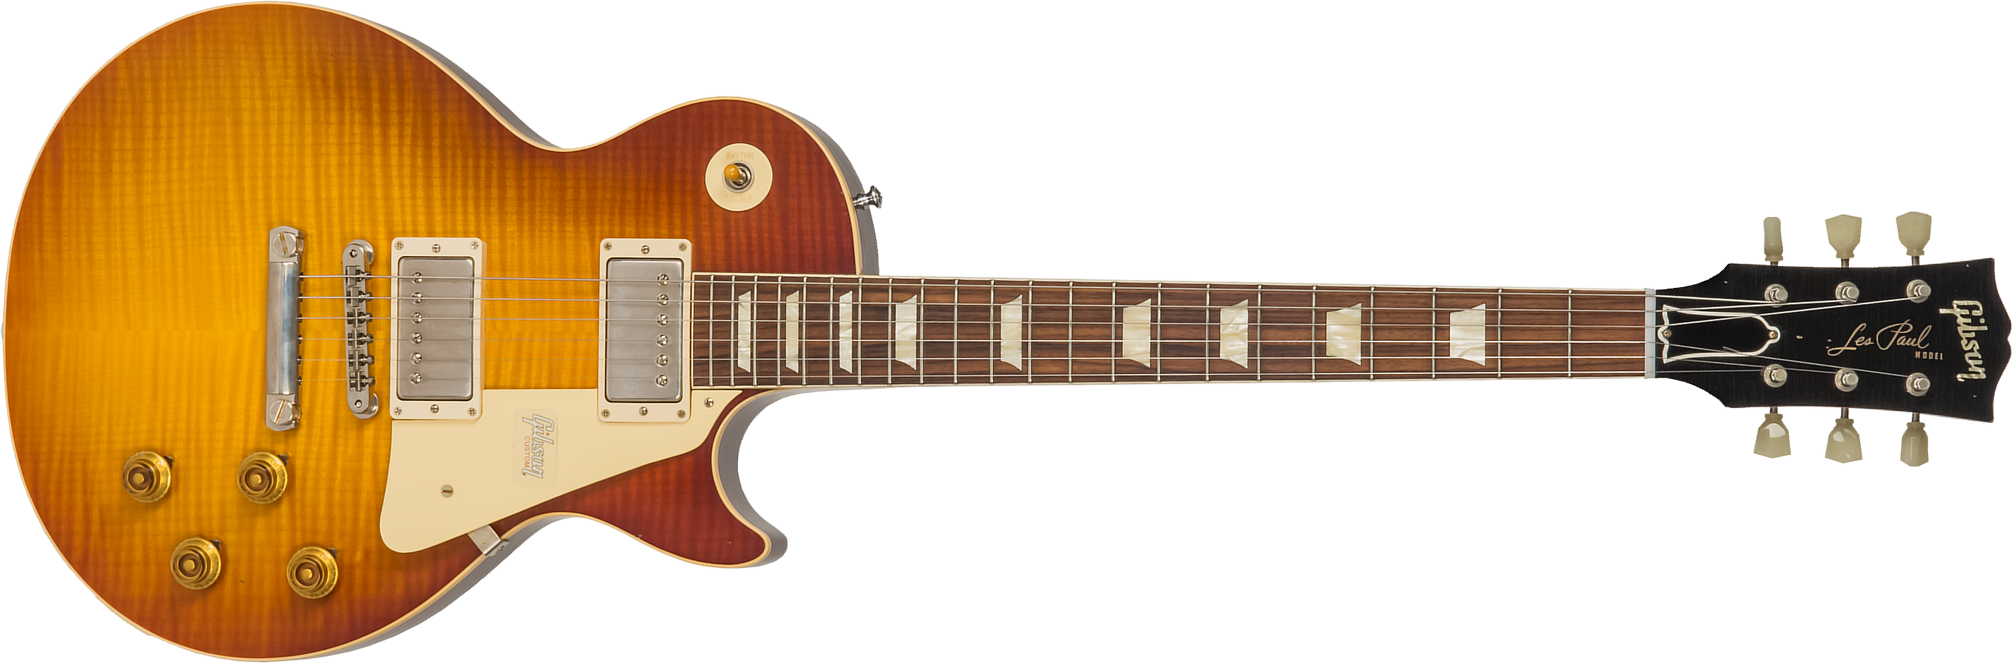 Gibson Custom Shop M2m Les Paul Standard 1958 2h Ht Rw #89886 - Aged Royal Teaburst - Guitarra eléctrica de corte único. - Main picture